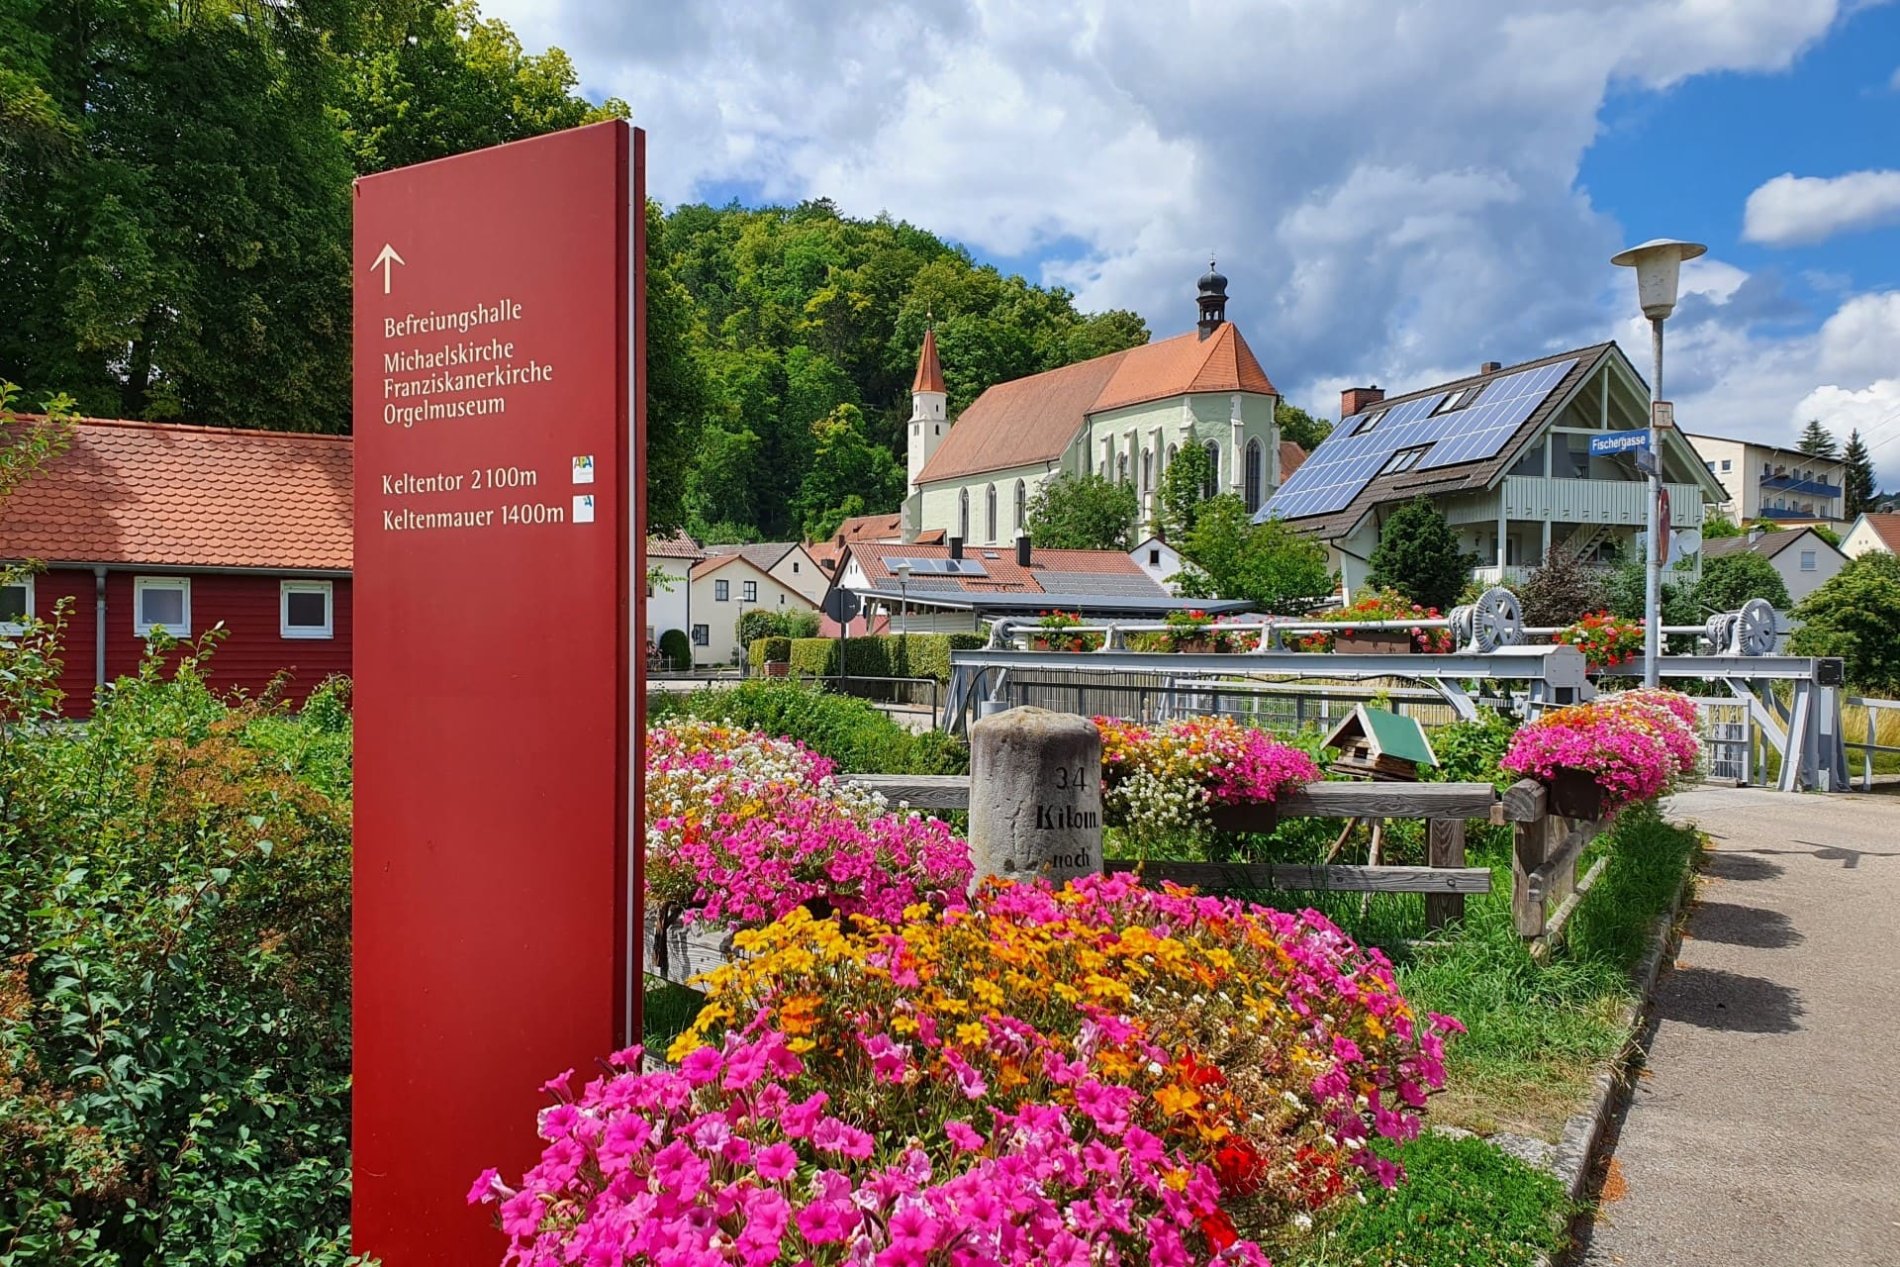 Links ist ein Hinweisschild vor einem bunten Blumenmeer, das auf das Orgelmuseum Kelheim hinweist. Die Kirche , in dem sich das Orgelmuseum befindet ist im Hintergrund sichtbar.